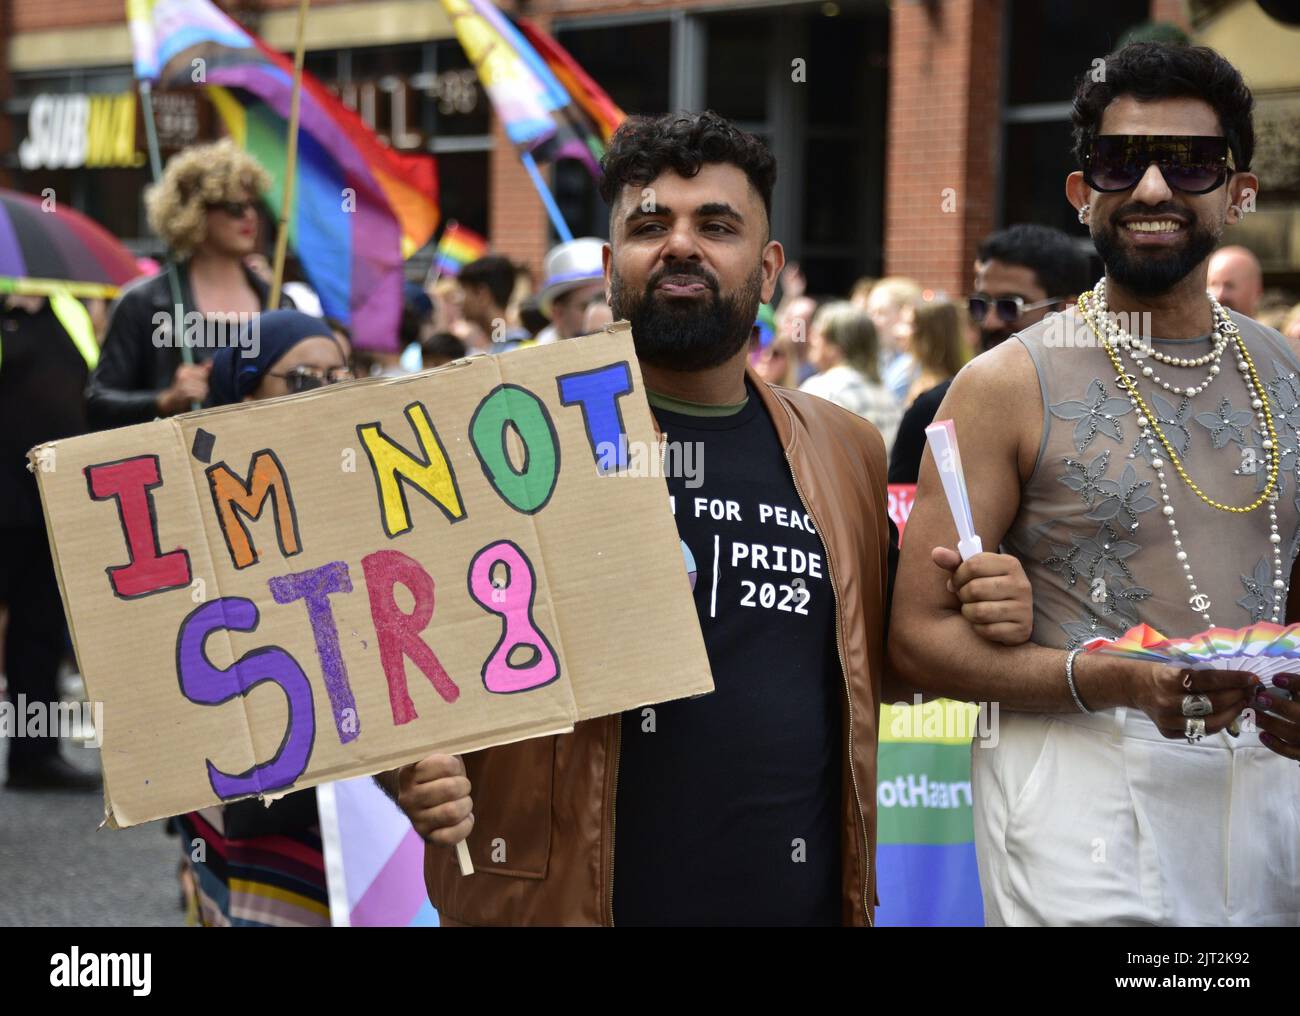 Manchester, Reino Unido. 27th de agosto de 2022. Un hombre lleva un cartel de 'Yo no soy str8'. Los participantes participan en el desfile LGBTQ+ Pride Parade, en el centro de Manchester, Reino Unido, mientras LGBTQ+ Pride continúa durante el fin de semana festivo del 26th al 29th de agosto. Los organizadores dicen: 'Manchester Pride es una de las principales organizaciones benéficas LGBTQ+ del Reino Unido. Nuestra visión es un mundo donde las personas LGBTQ+ son libres de vivir y amar sin prejuicio. Somos parte de un movimiento mundial del Orgullo que celebra la igualdad LGBTQ+ y desafía la discriminación.' Crédito: Terry Waller/Alamy Live News Foto de stock